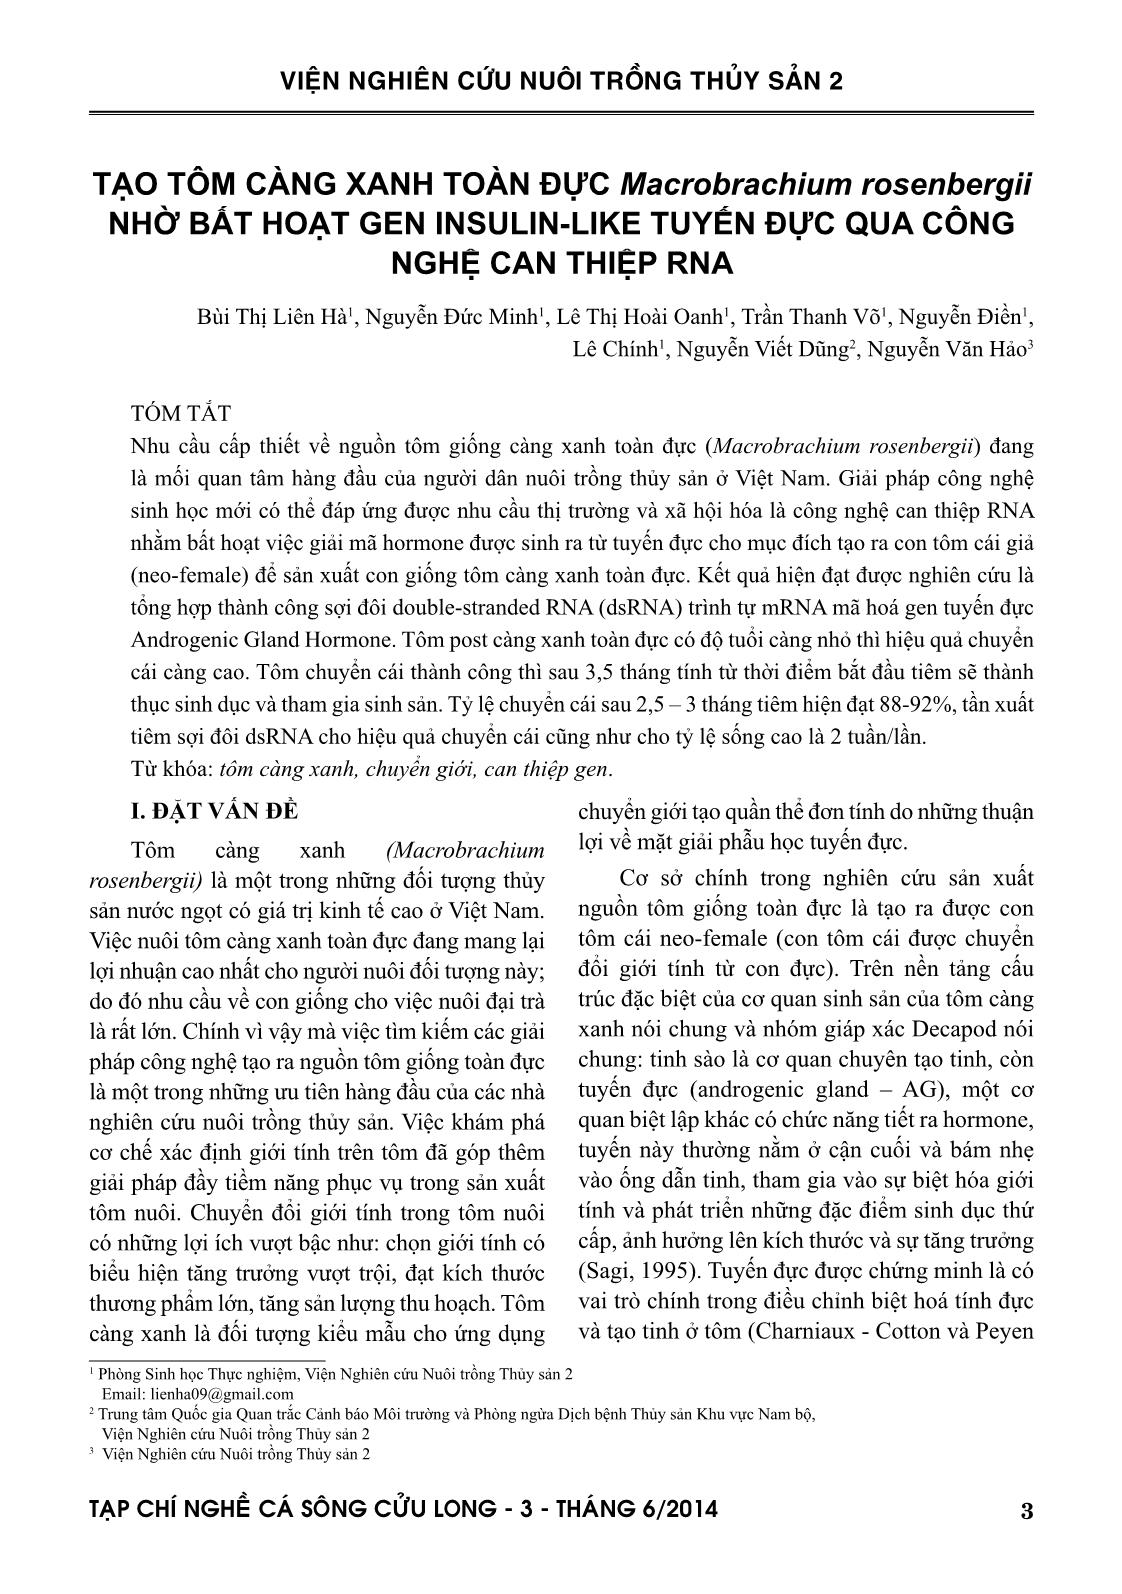 Tạp chí Nghề cá sông Cửu Long - Số 03/2014 trang 3